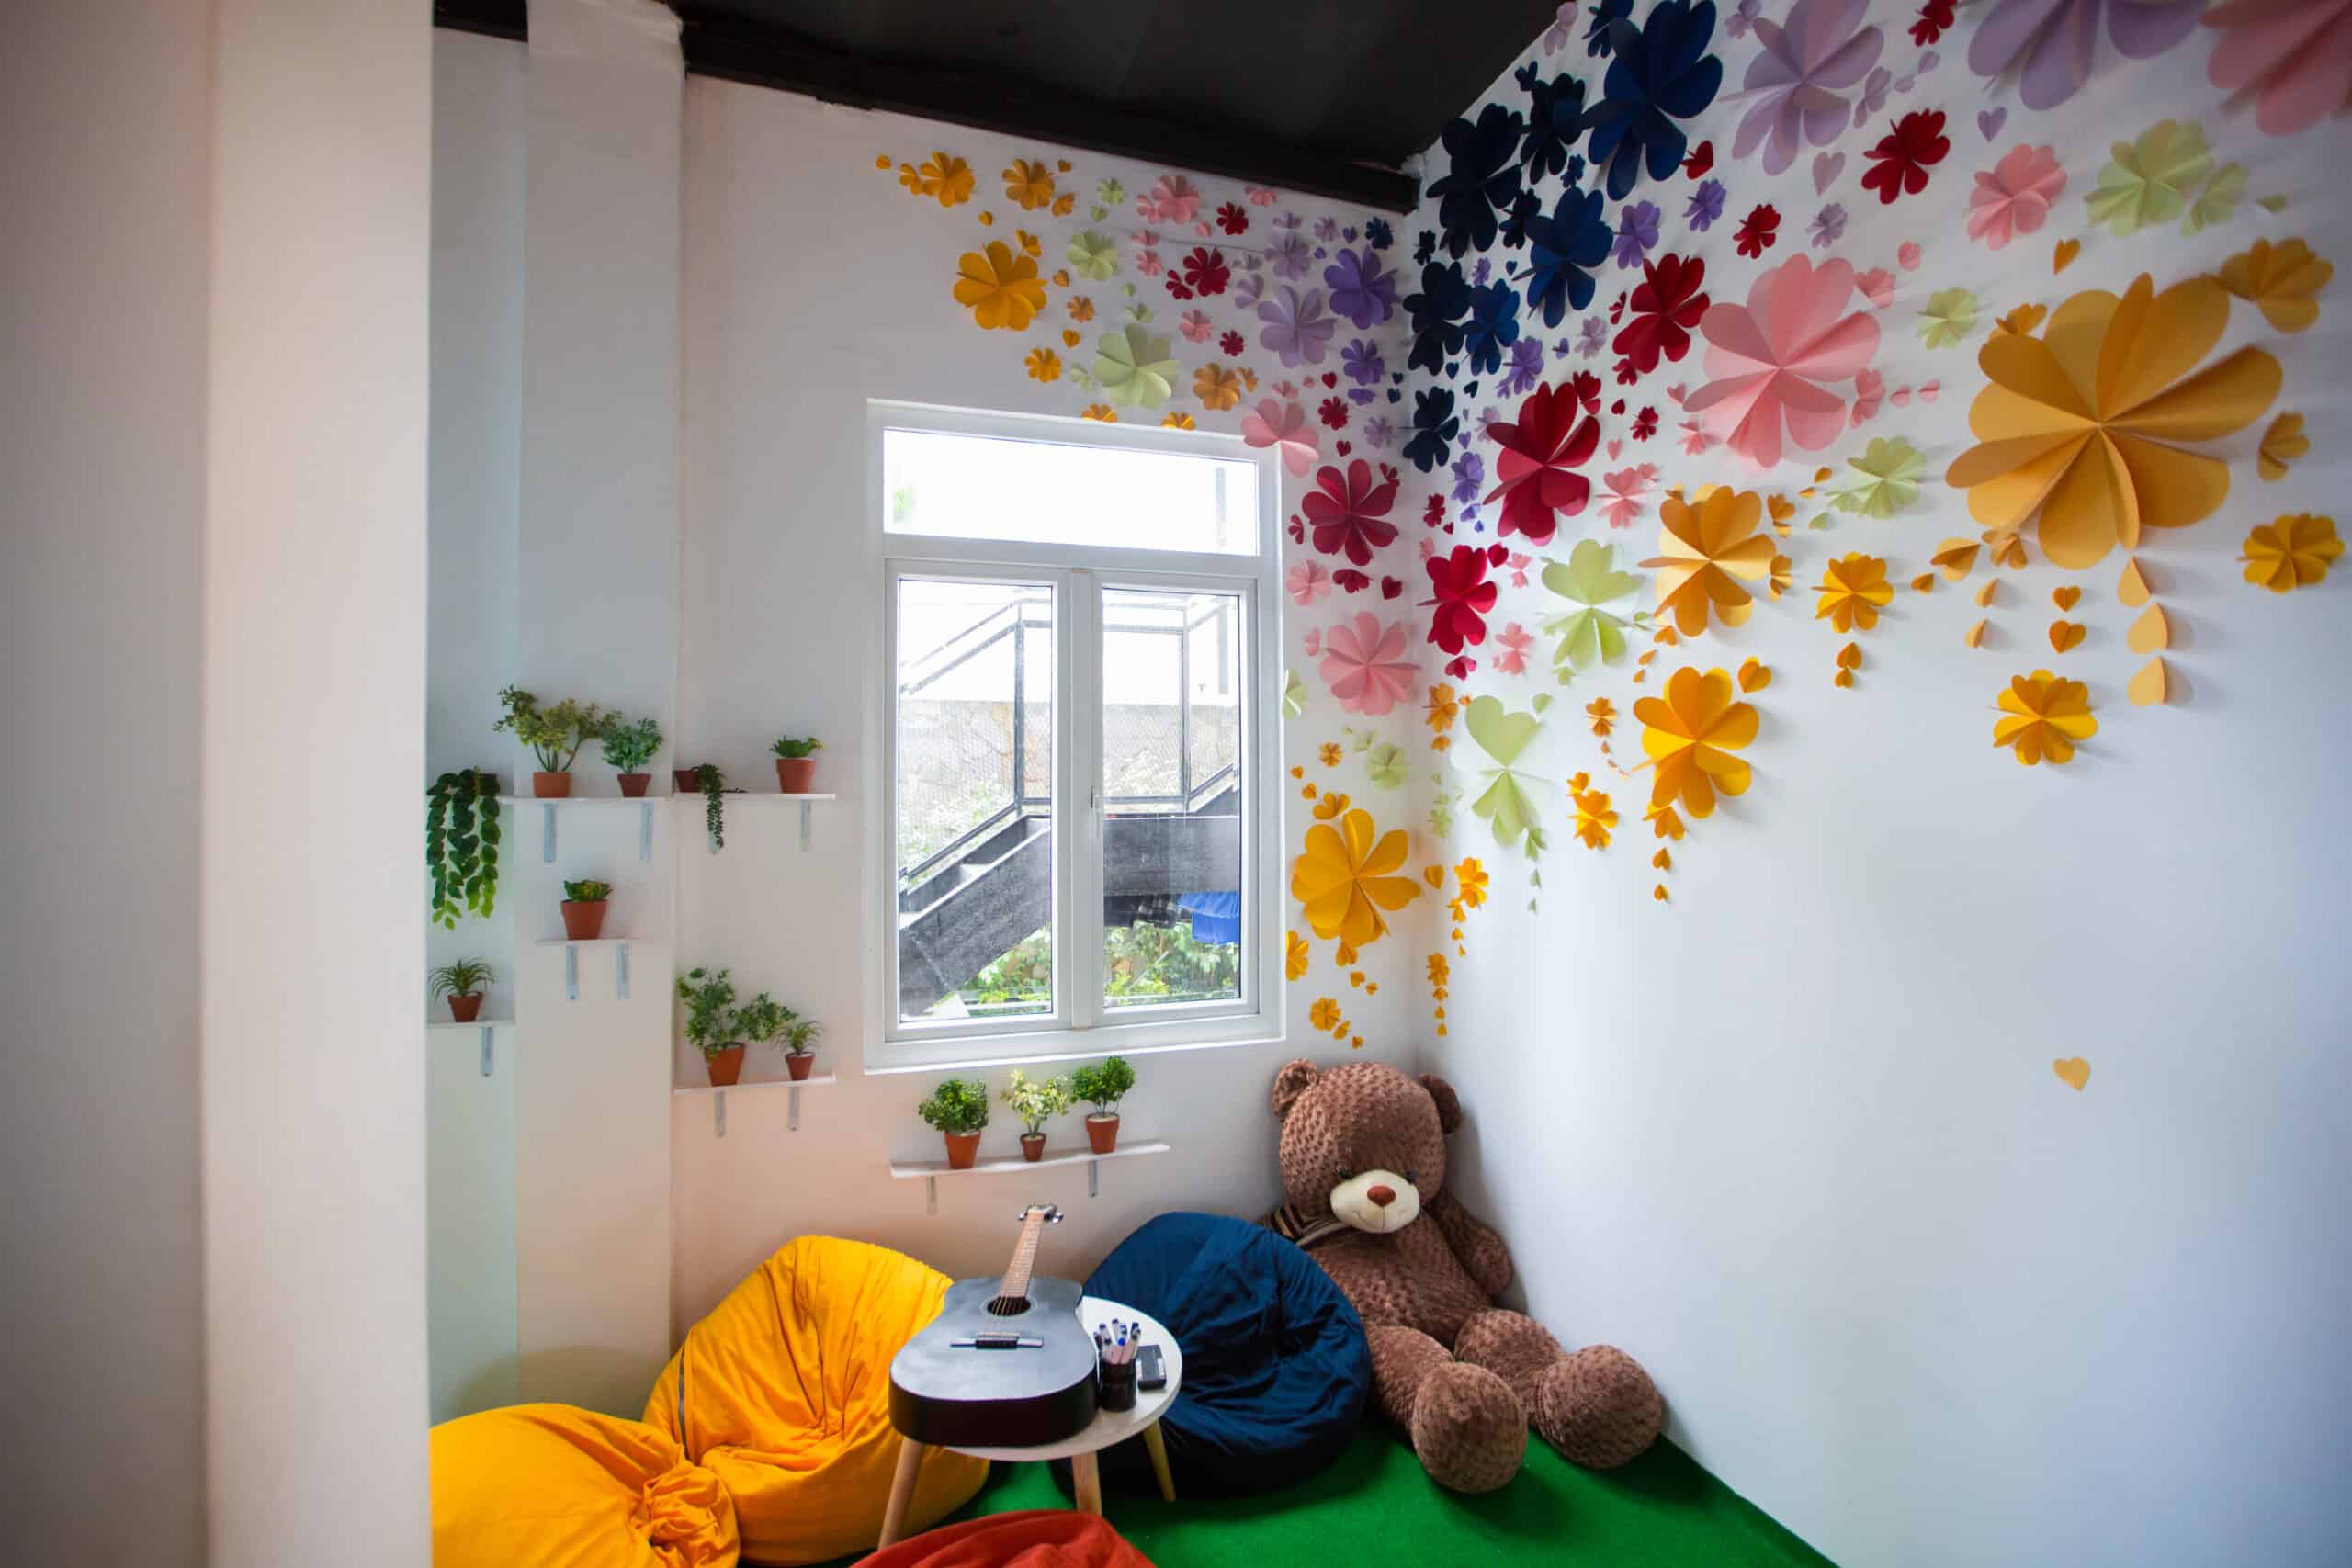 Quarto infantil decorado com ornamentos coloridos em suas paredes